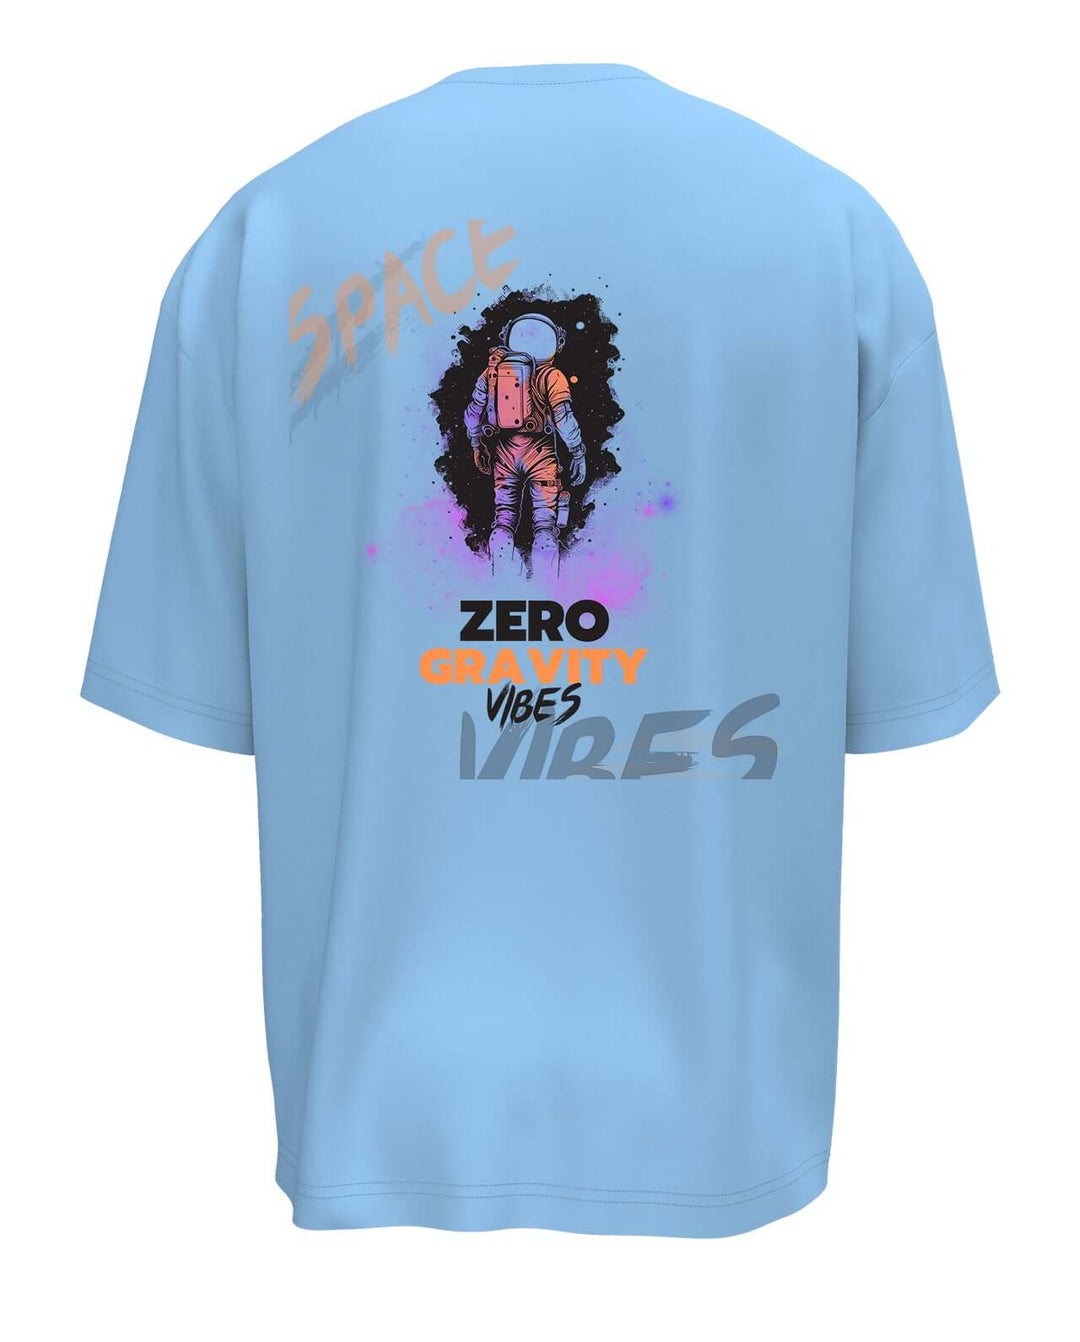 Zero Gravity Vibes Oversized T-shirt